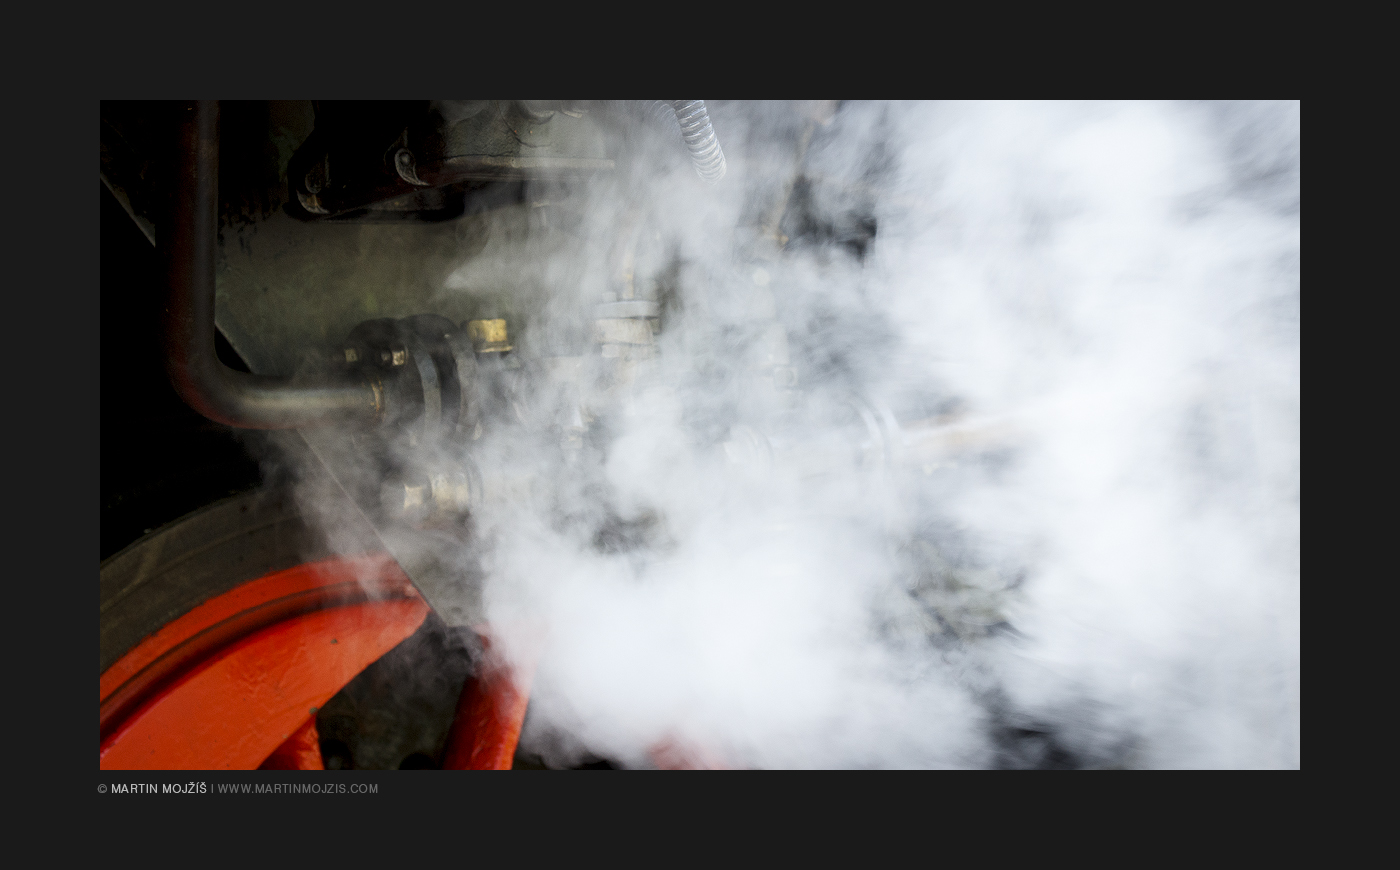 Clouds of steam, steam locomotive. Kolesovka 2017.